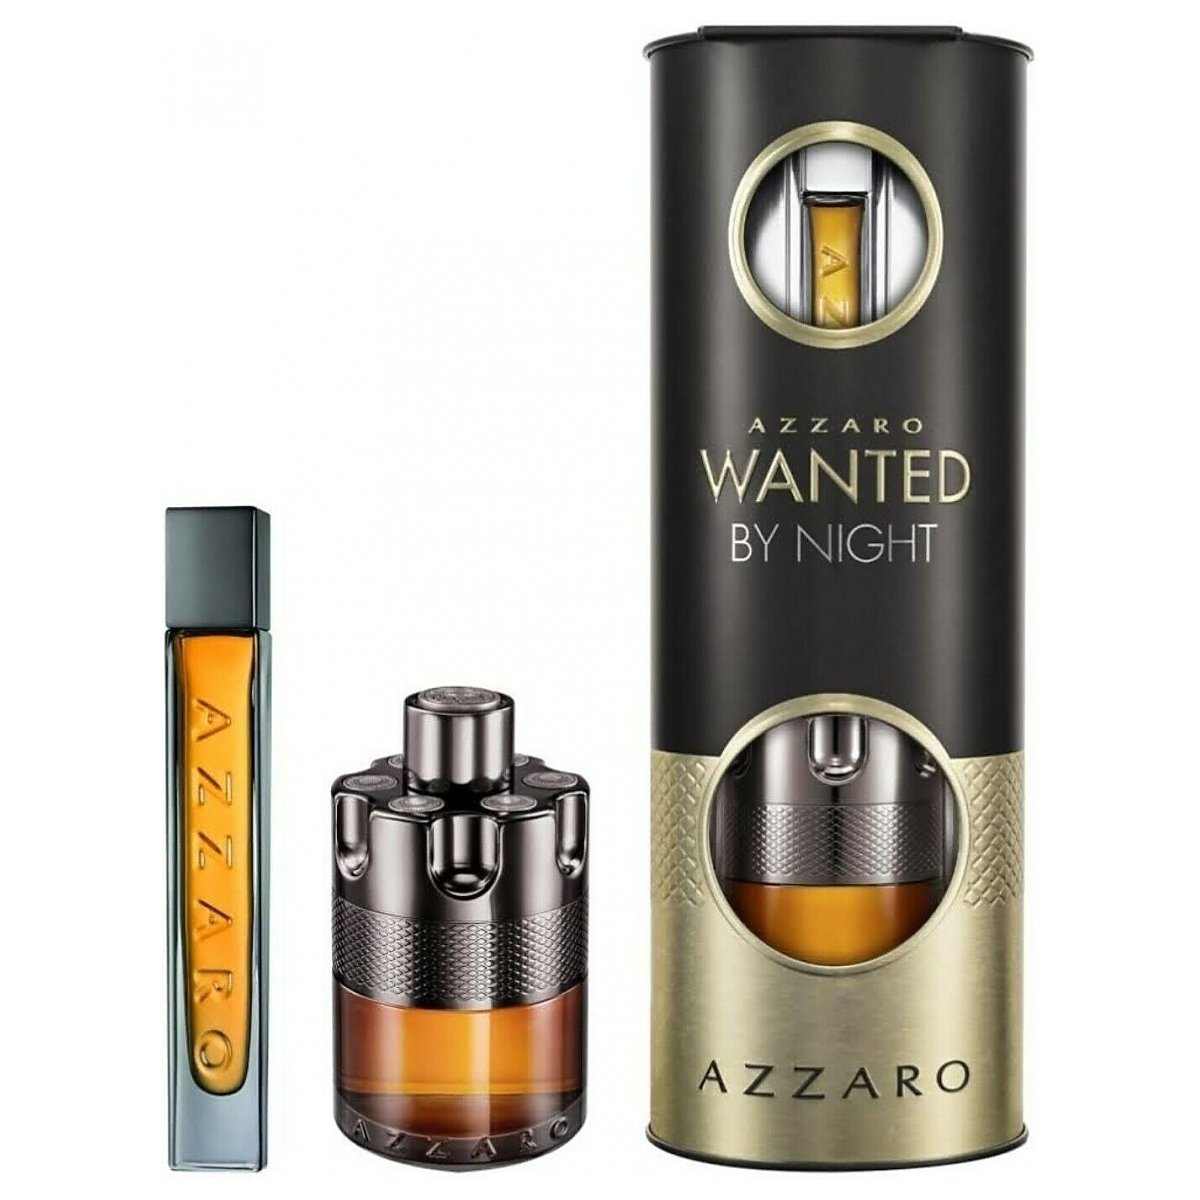 Azzaro Wanted by Night Zestaw upominkowy EDP 100ml + EDP 15ml - Perfumeria Dolce.pl